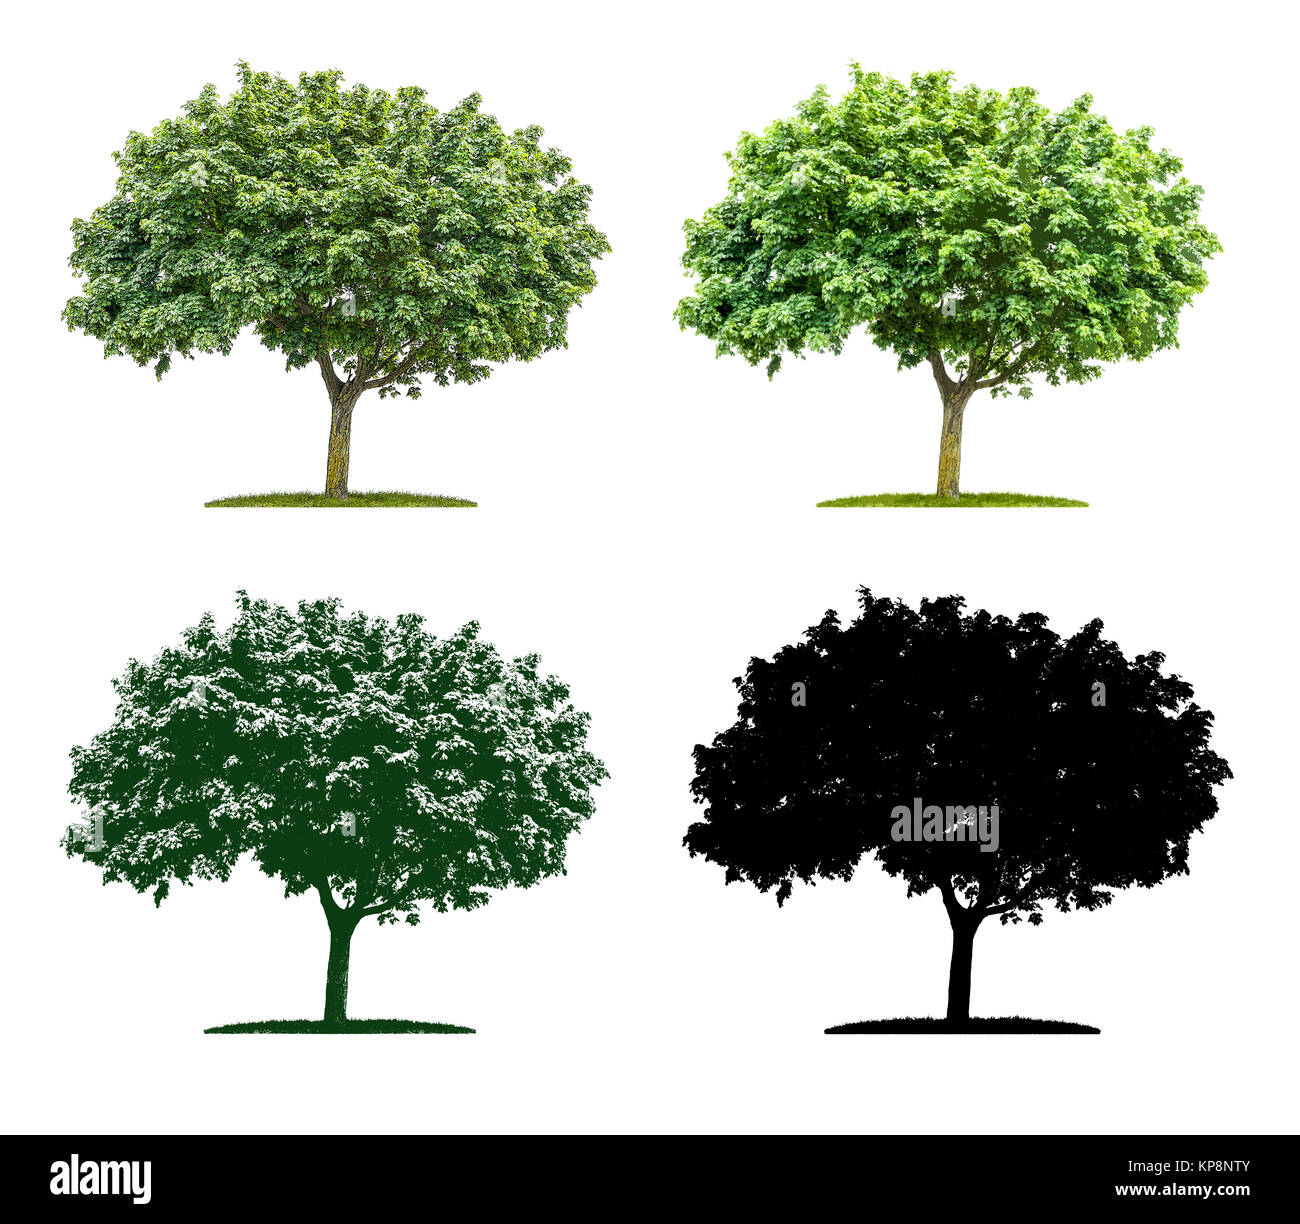 Baum in vier unterschiedlichen Illustrationstechniken - Ahorn Stock Photo